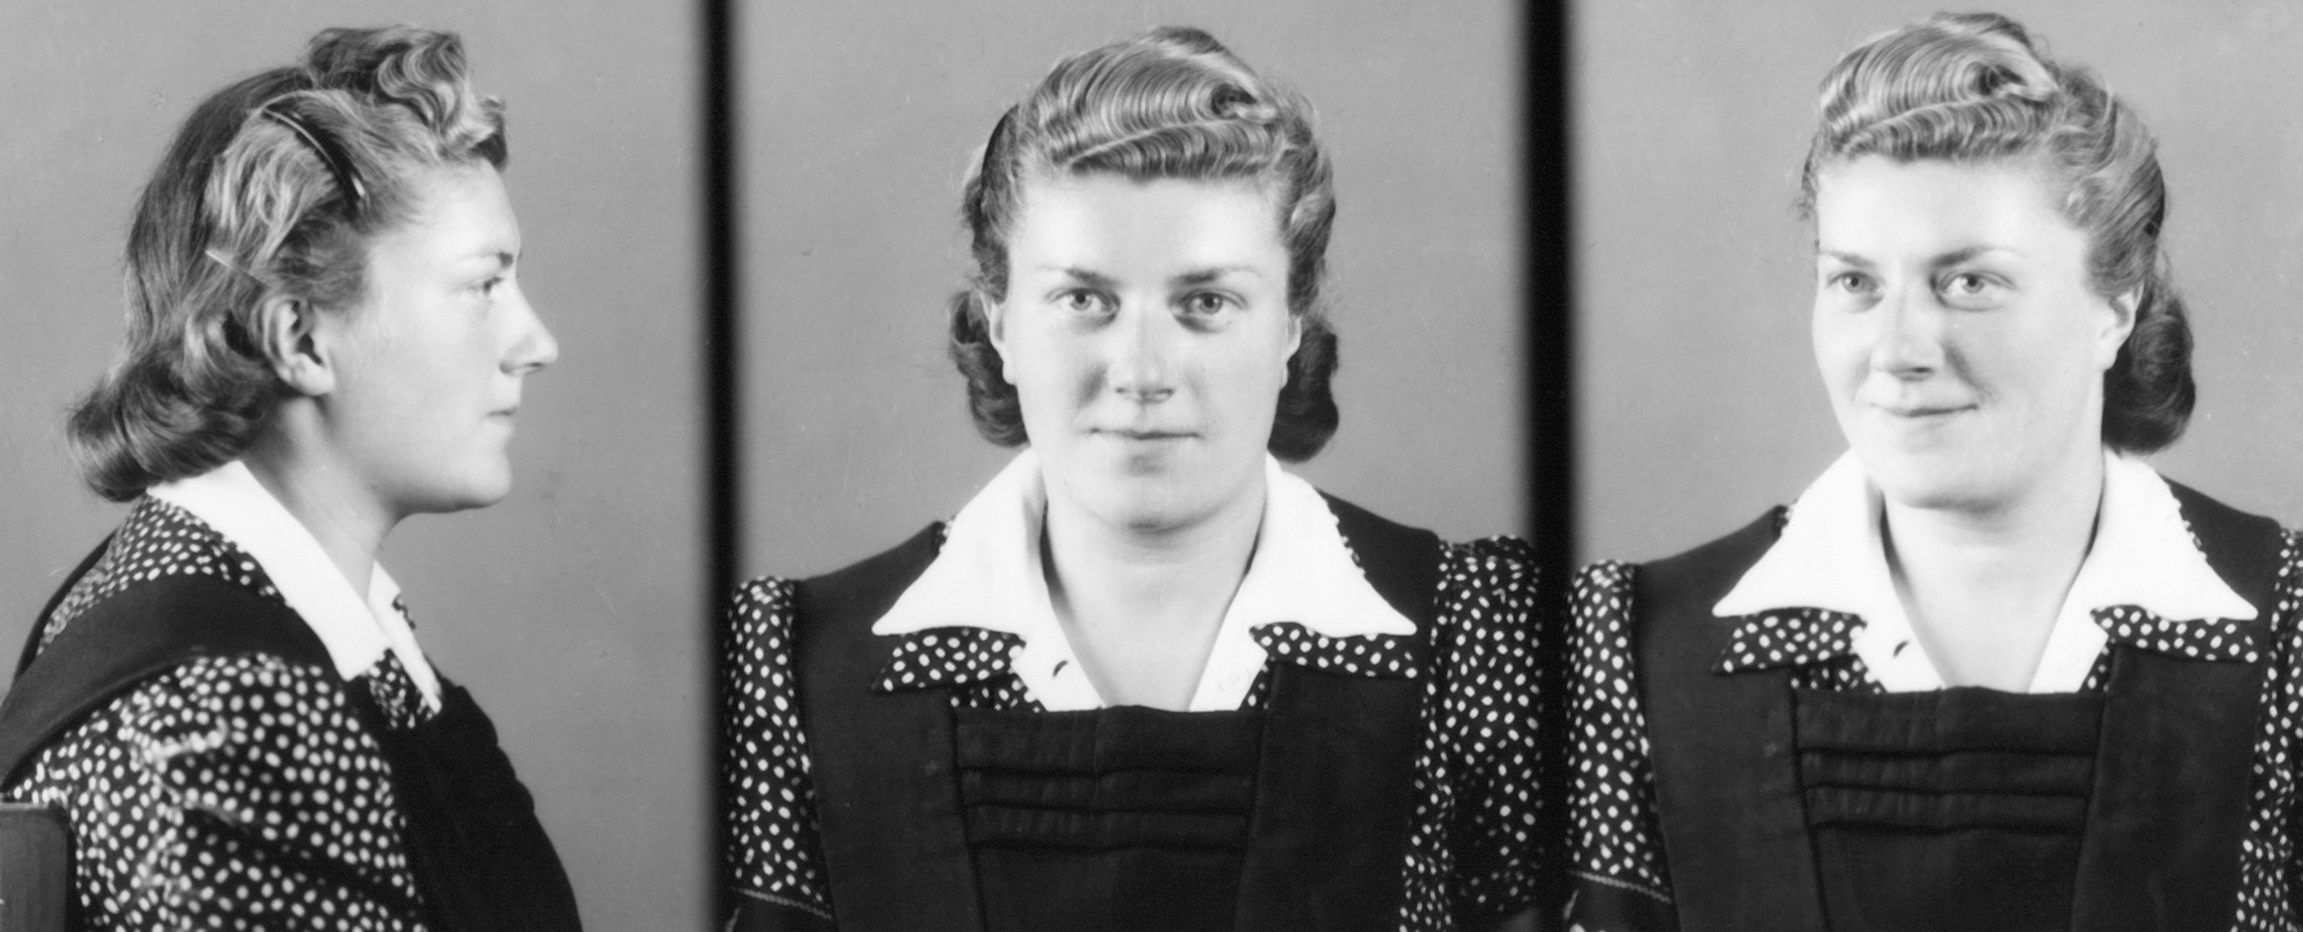 Fotografia rejestracyjna więźniarki ubranej w sukienkę i fartuch w trzech pozach: bokiem, na wprost i z ukosa. Włosy długie, upięte.